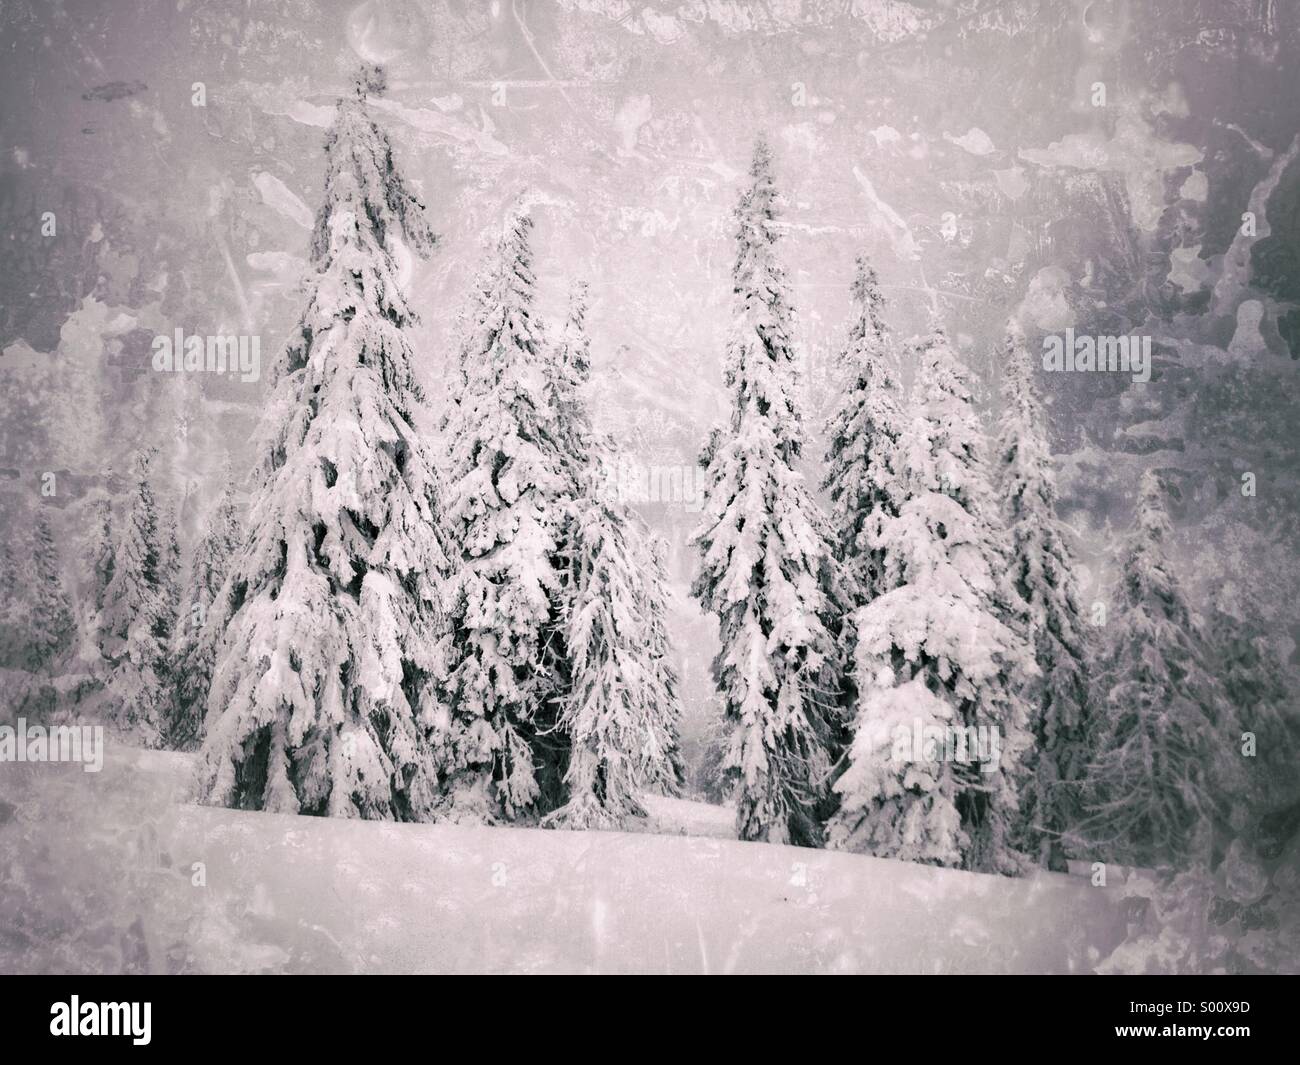 La plaque humide collodion) photo d'arbres couverts de neige Banque D'Images